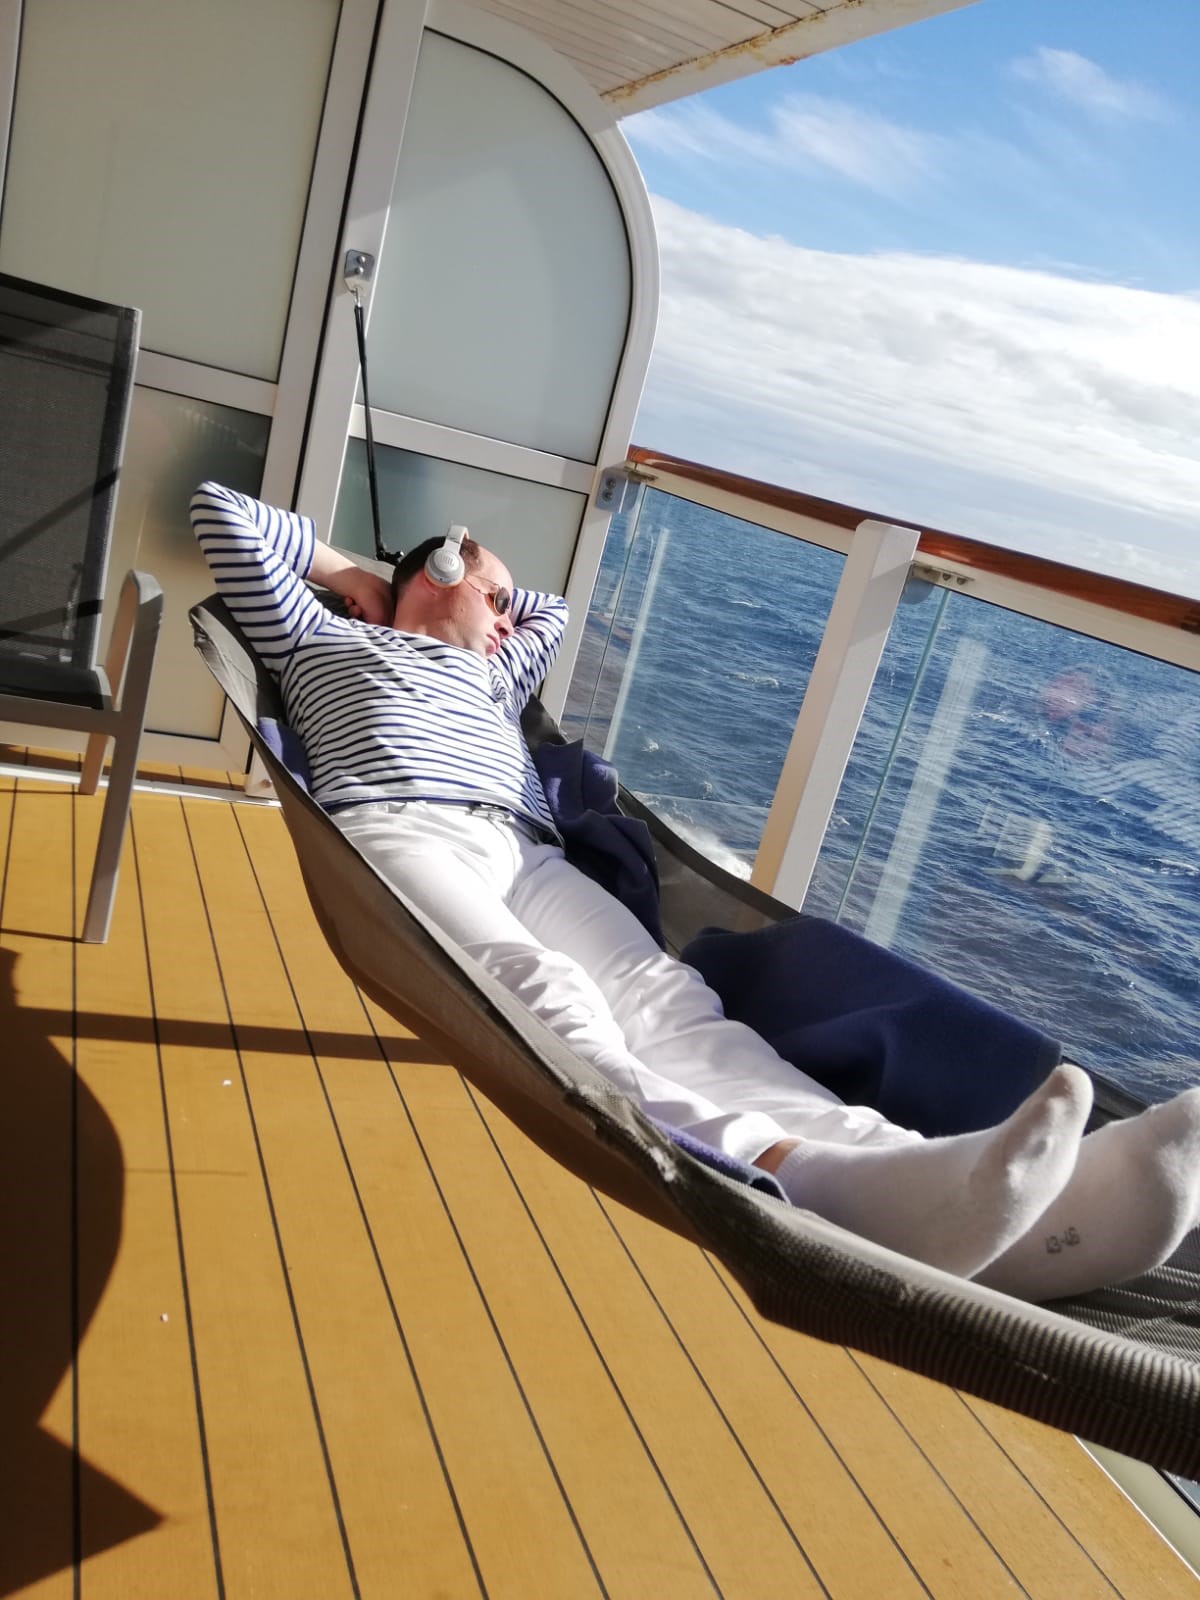 Mein Schiff Blog Gastautor Tobias Fink geniesst die Hängematte auf seinem Balkon